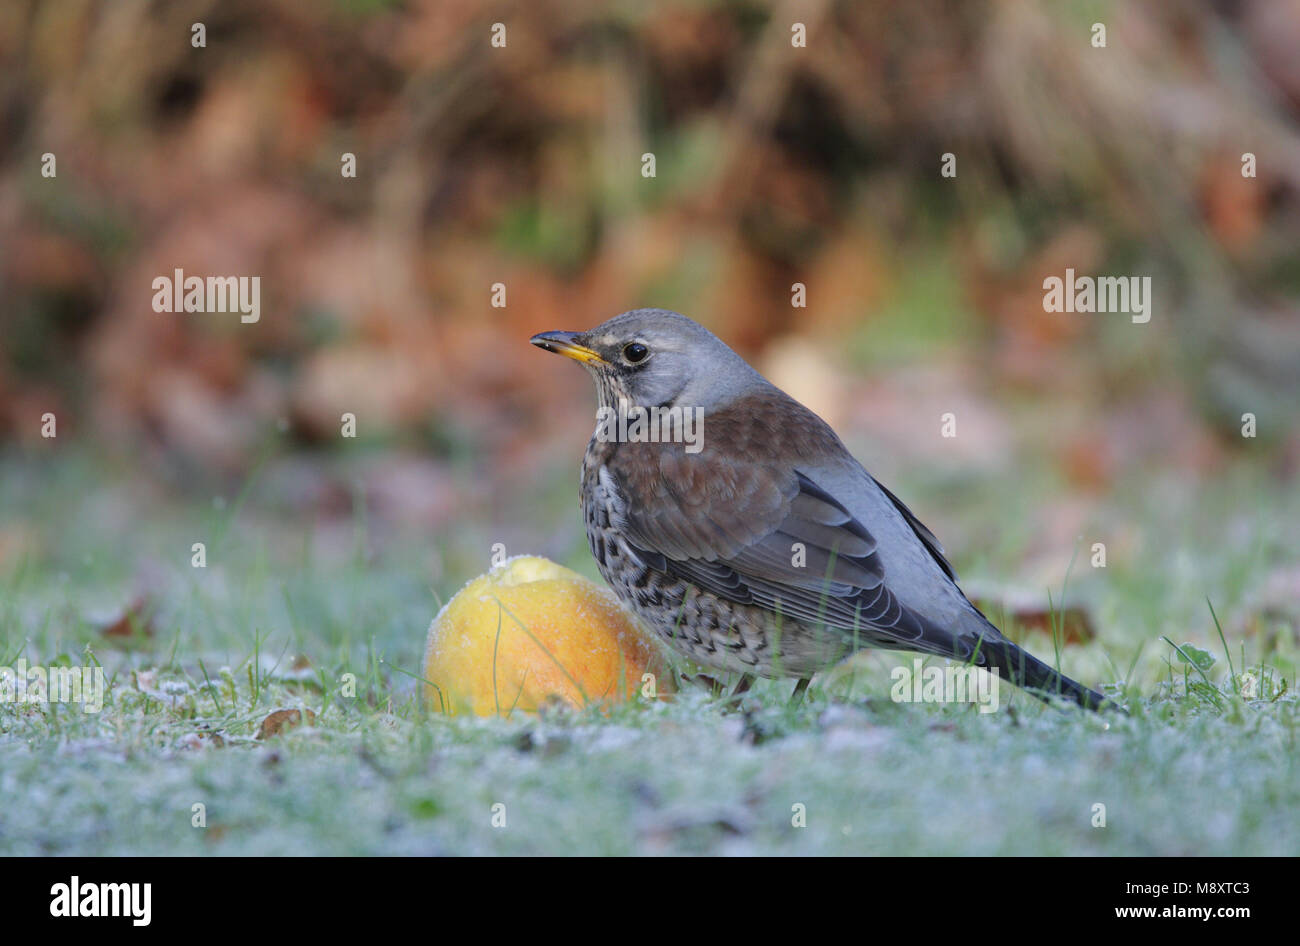 Kramsvogel foeragerend op appel; Fieldfare fouraging on apple Stock Photo